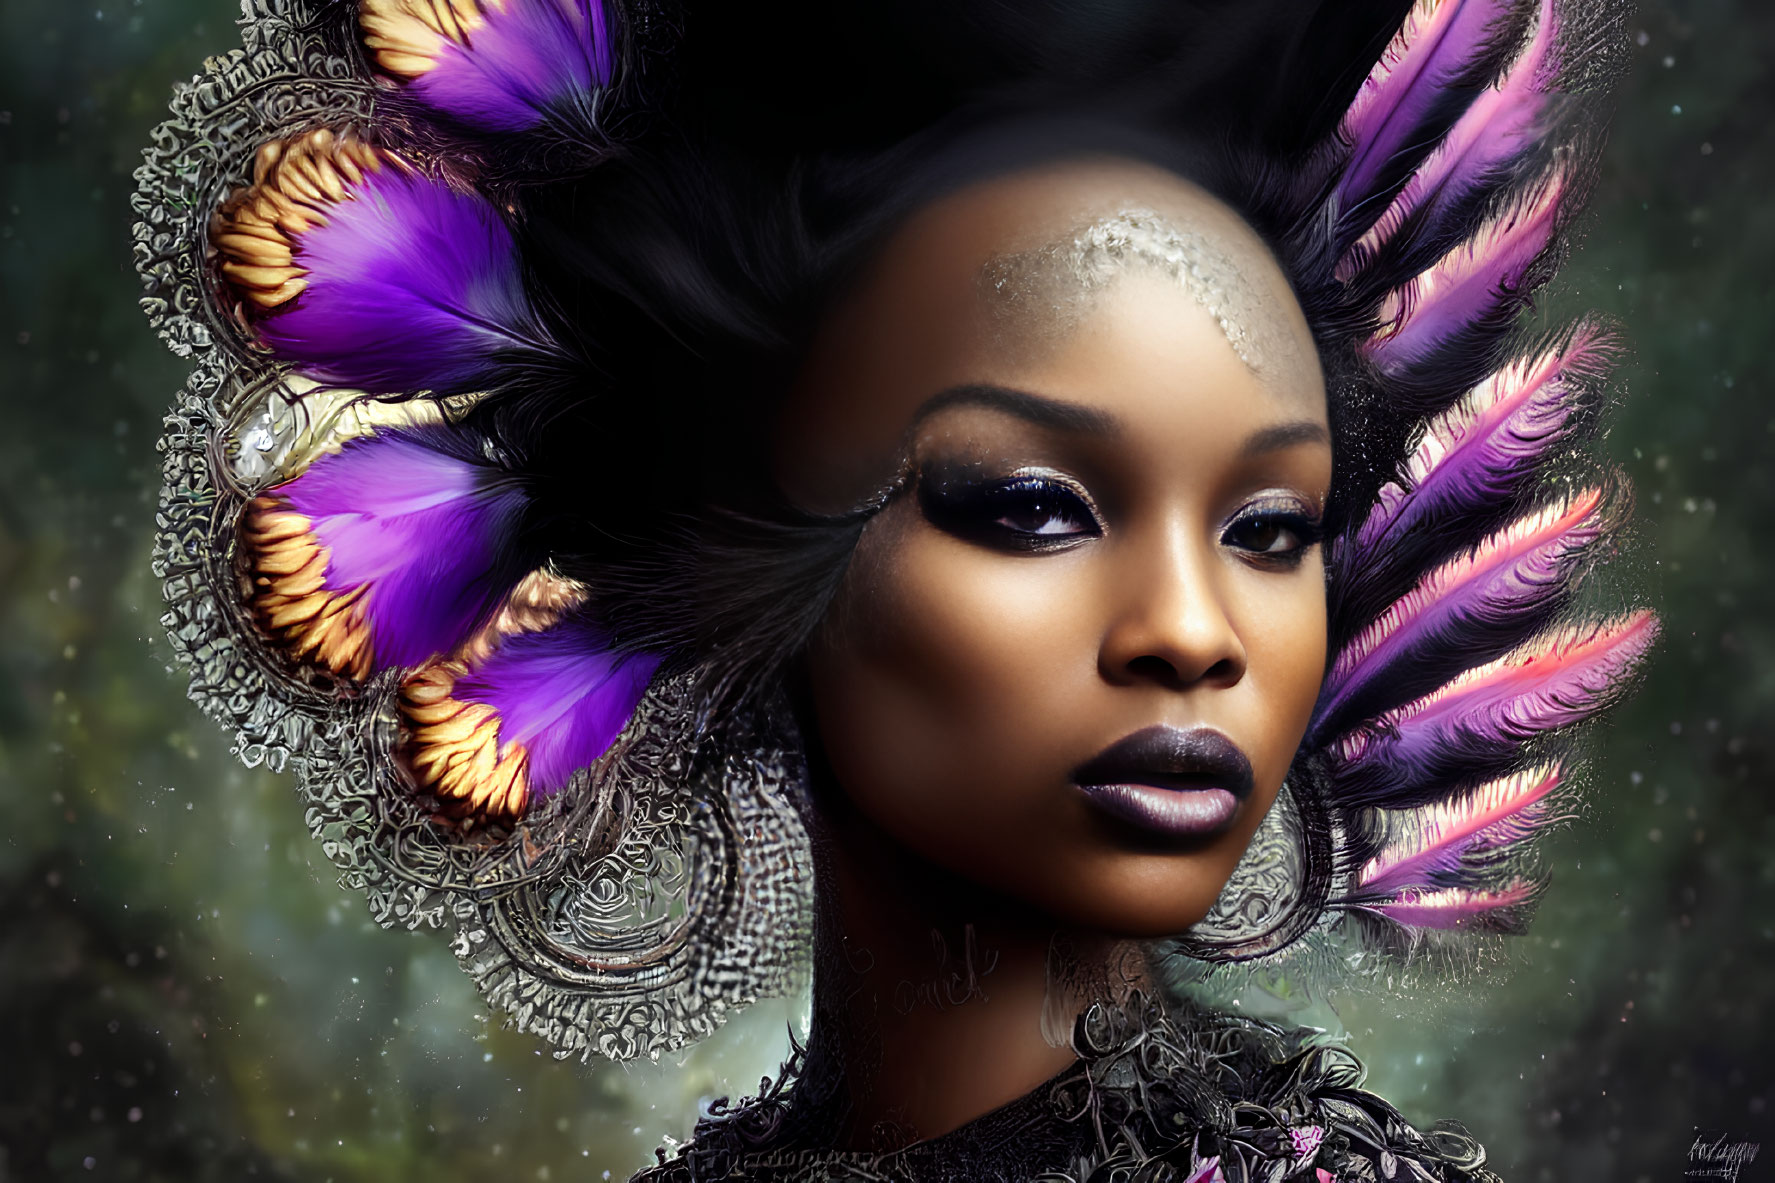 Elaborate feathered headwear digital portrait of a woman